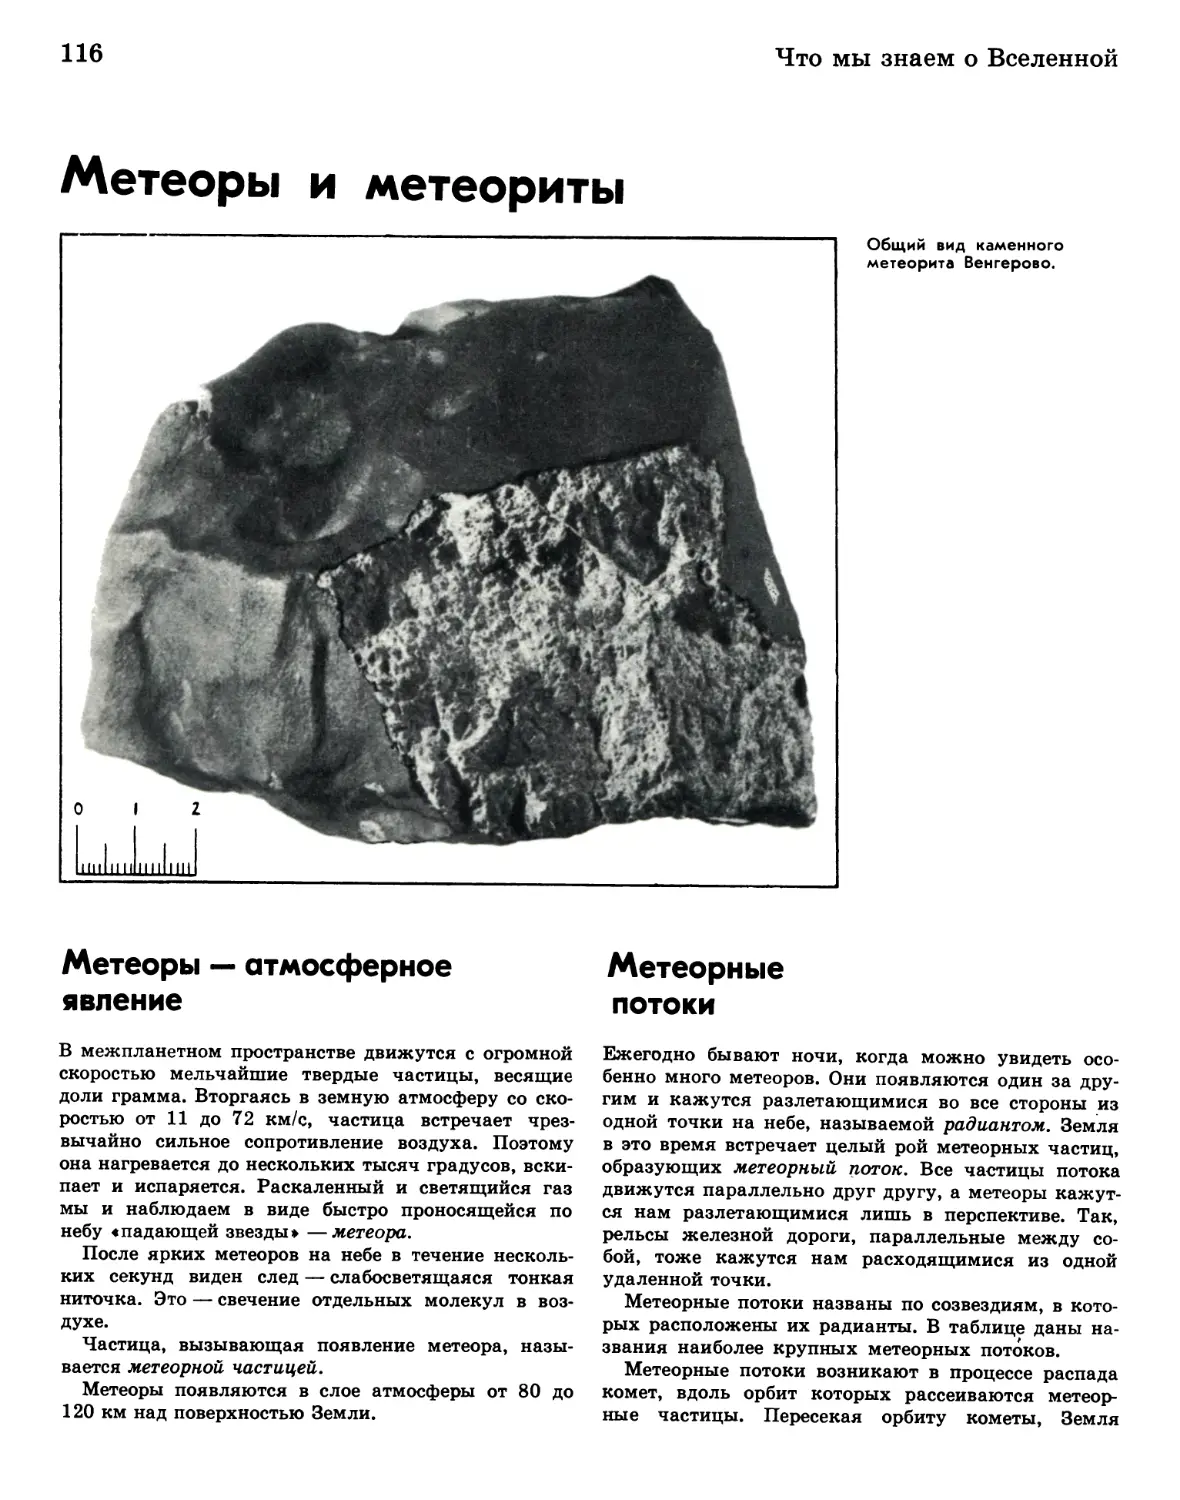 Метеоры и метеориты
Метеорные потоки